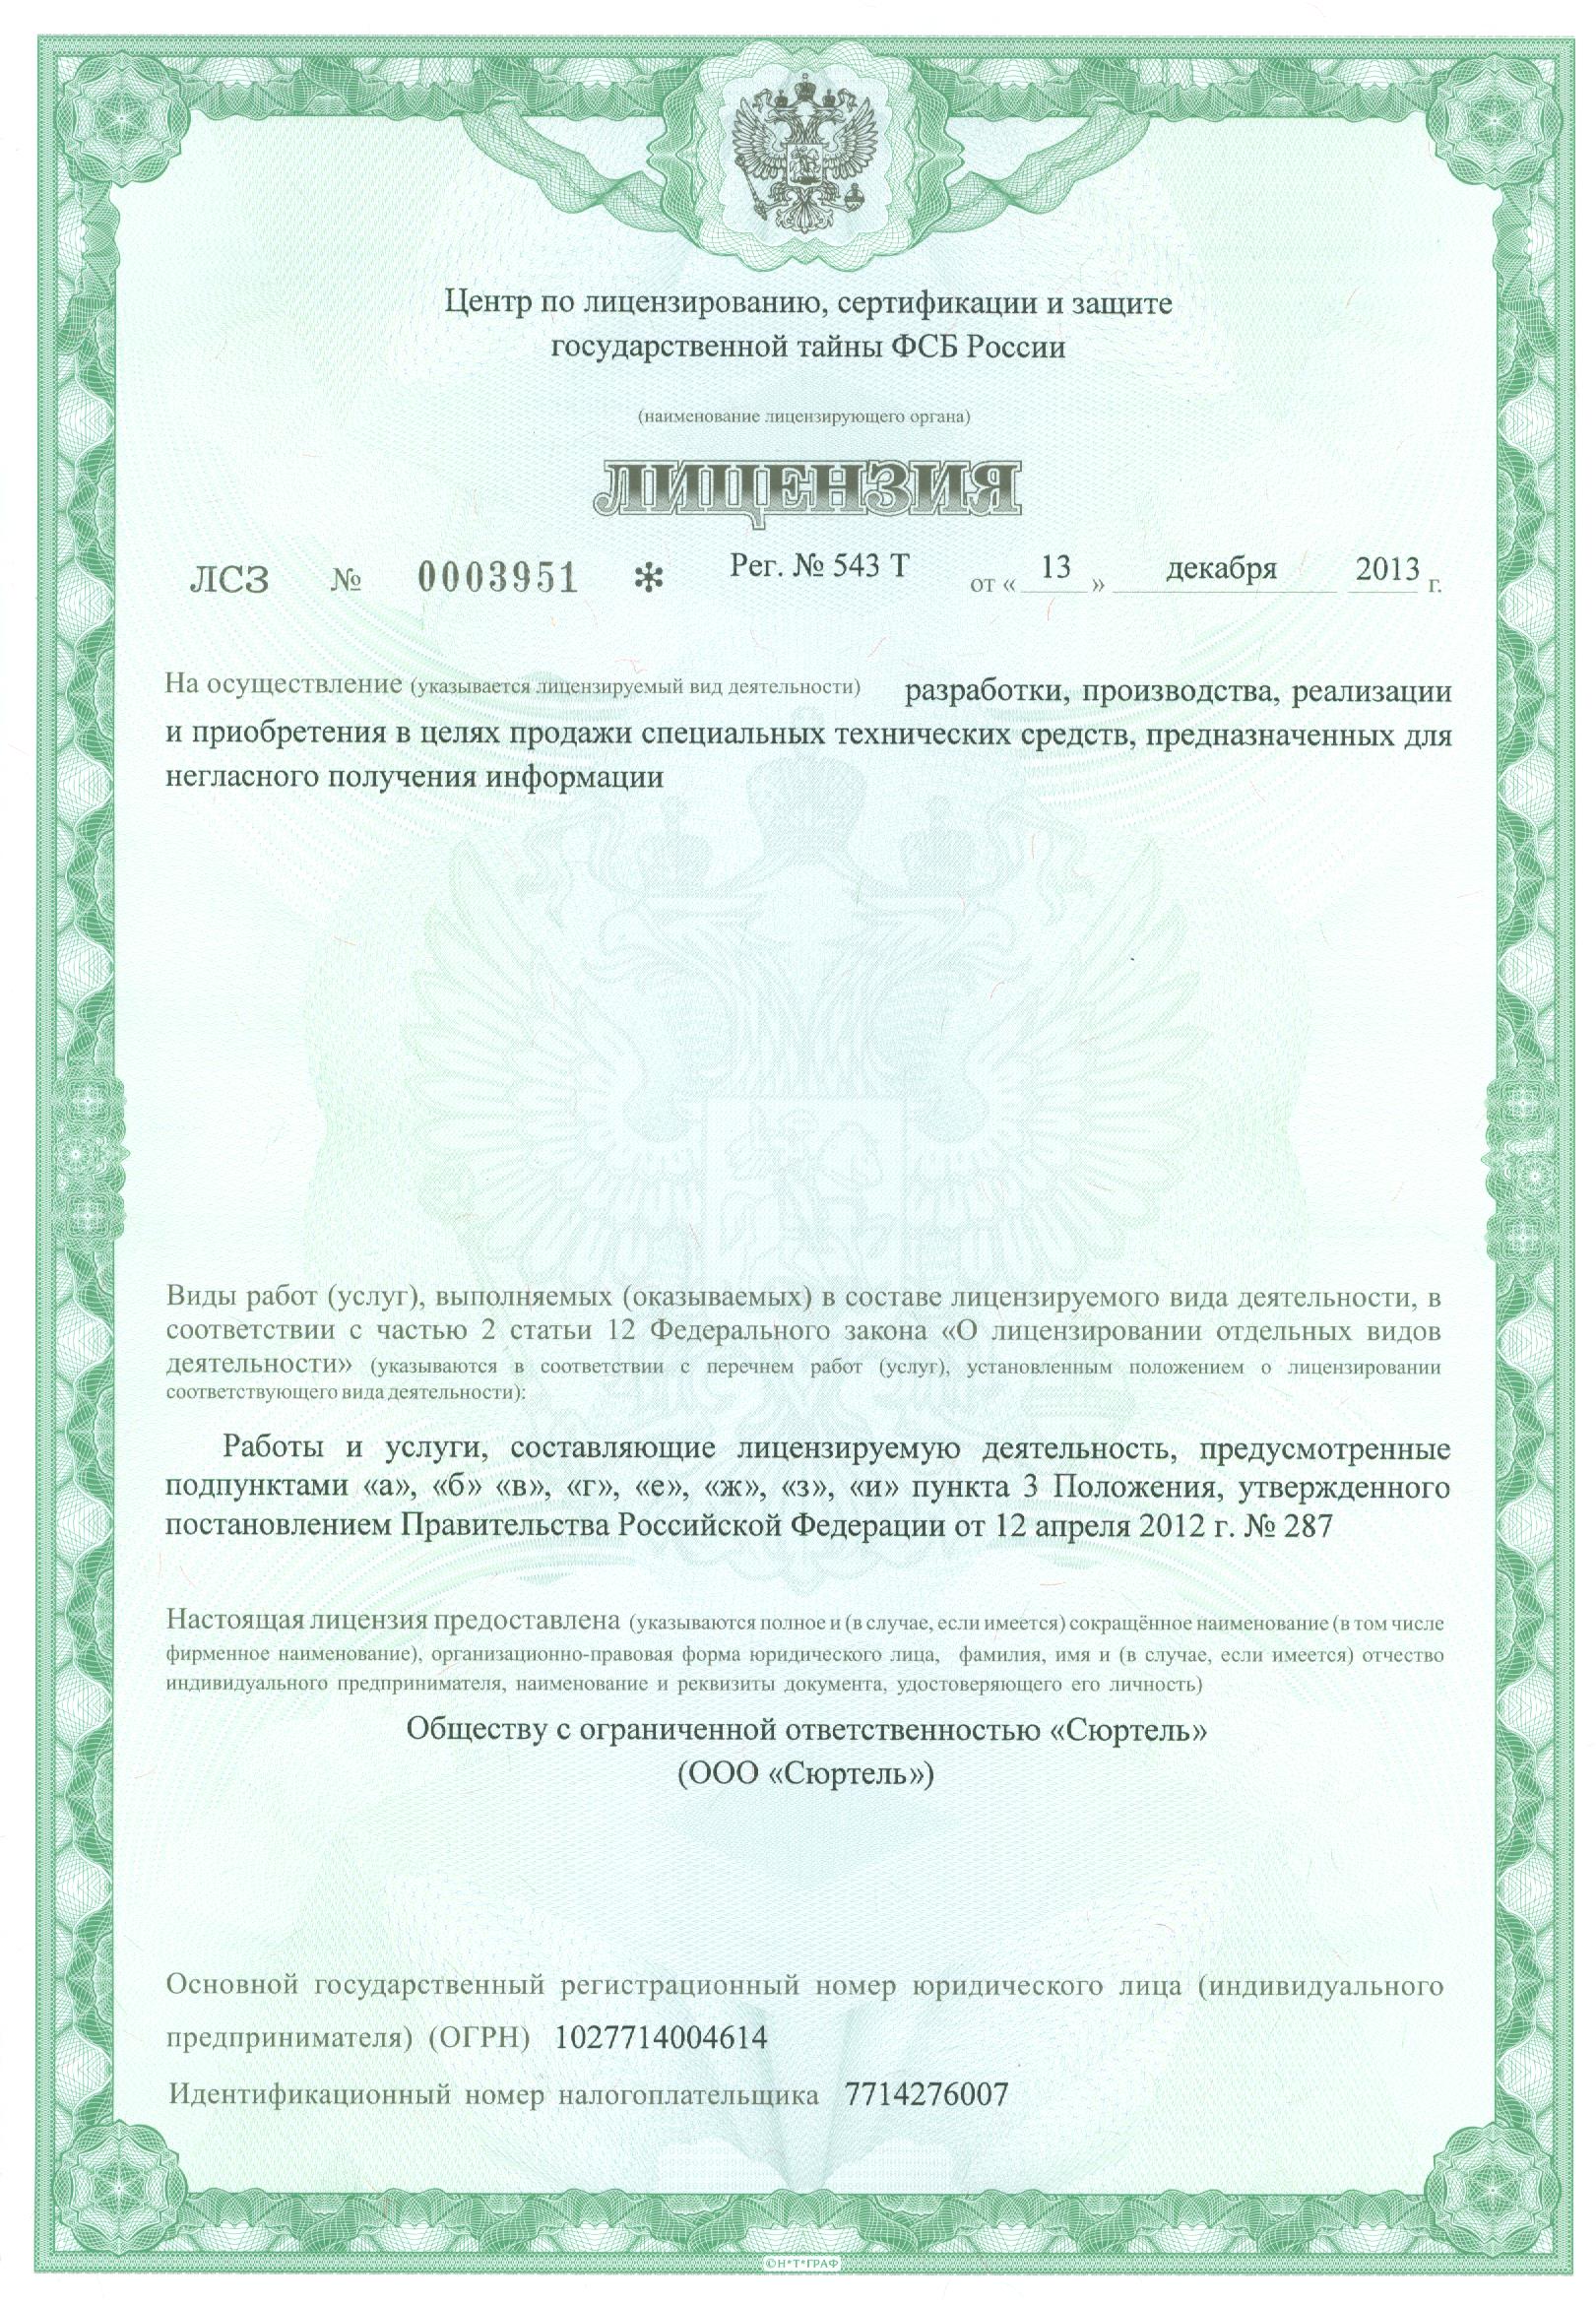 Сертификат Сюртель